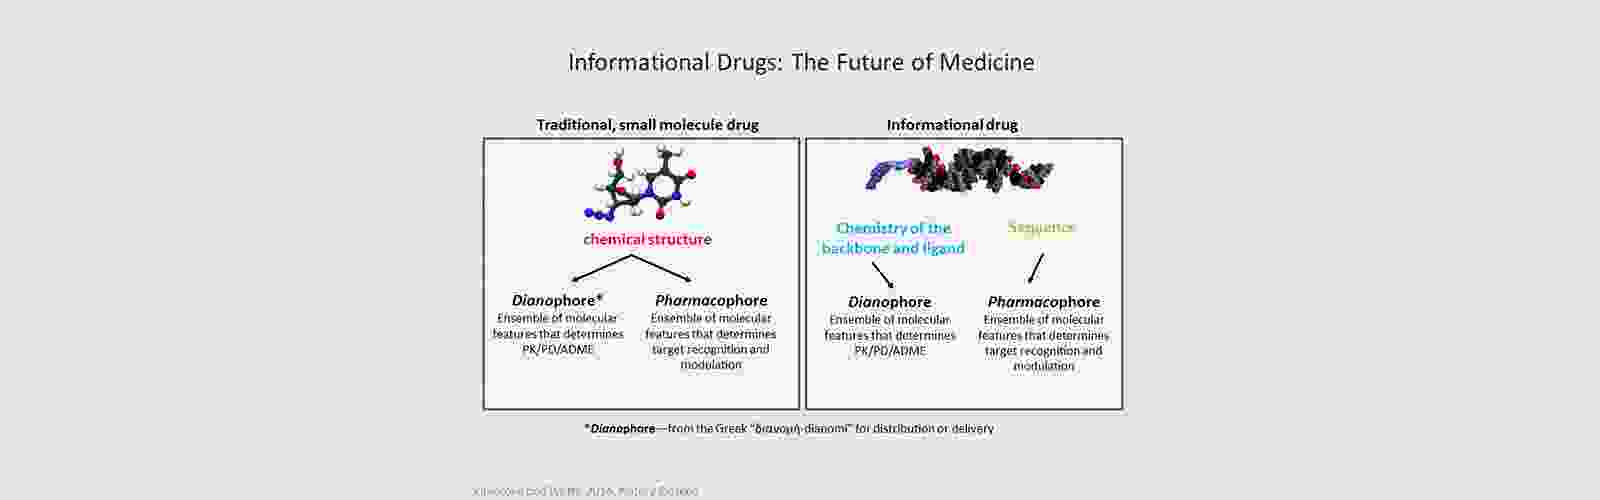 informational-drugs-slide.png